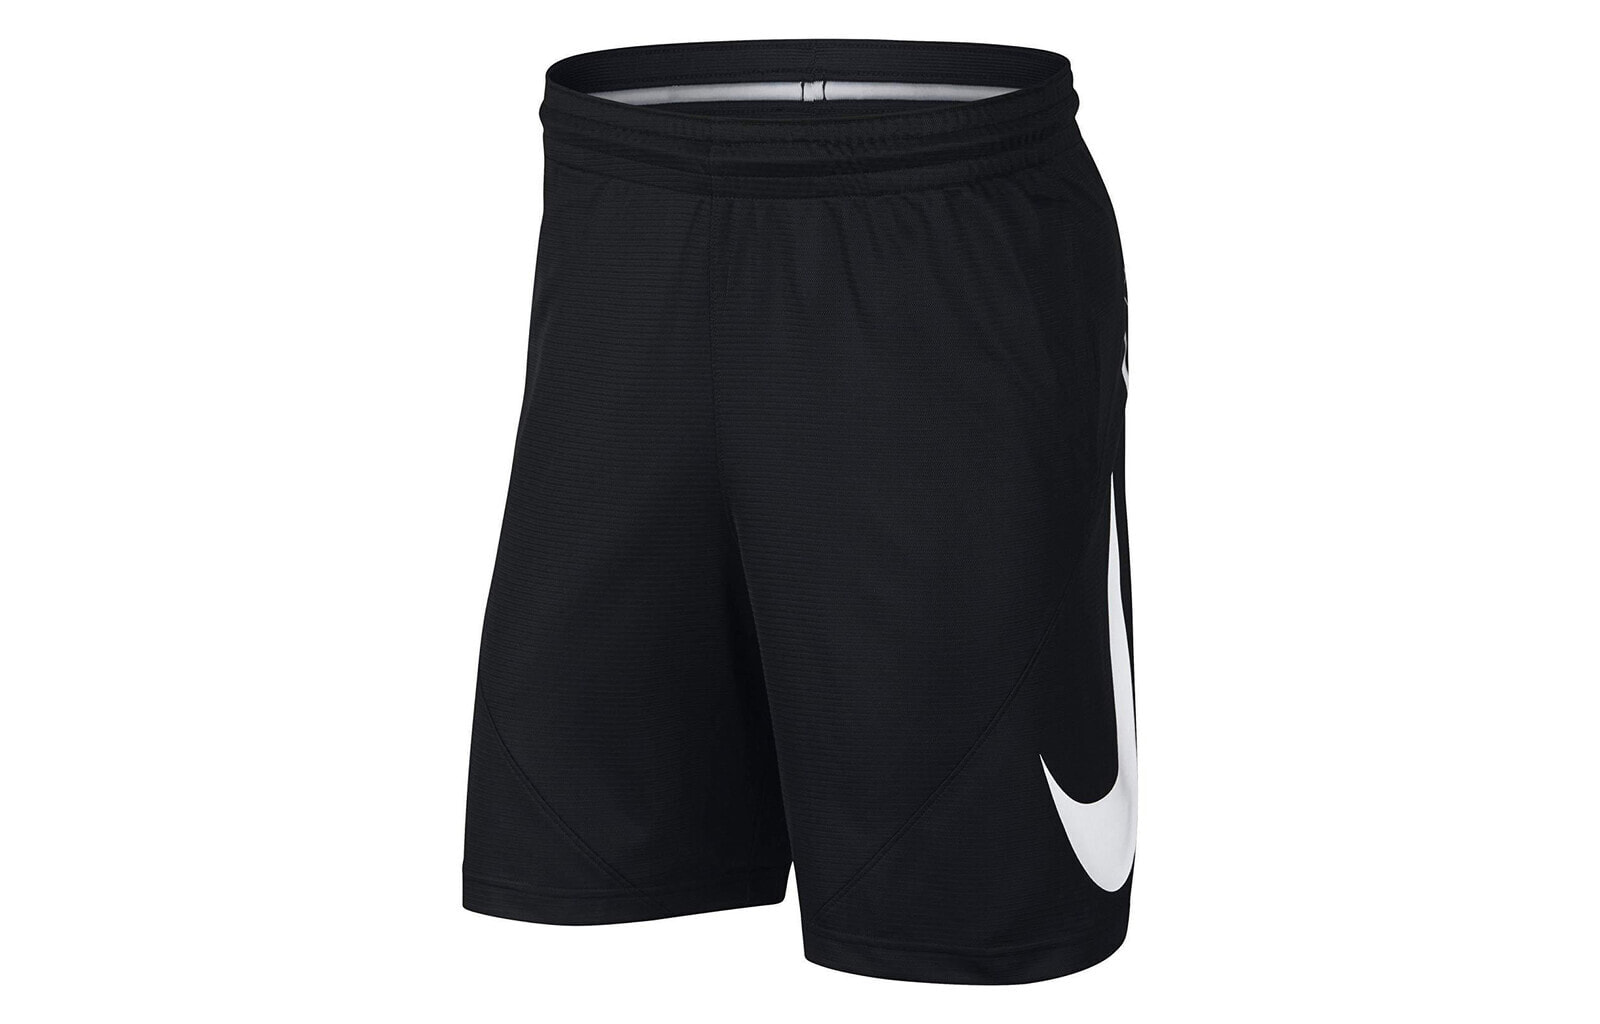 Nike Black Dri-fit 9 Inch Basketball Shorts 黑白大钩子短裤速干篮球裤 男款 黑色 / Брюки Nike Dri-fit 9 Inch Basketball Shorts Black (910704-010)